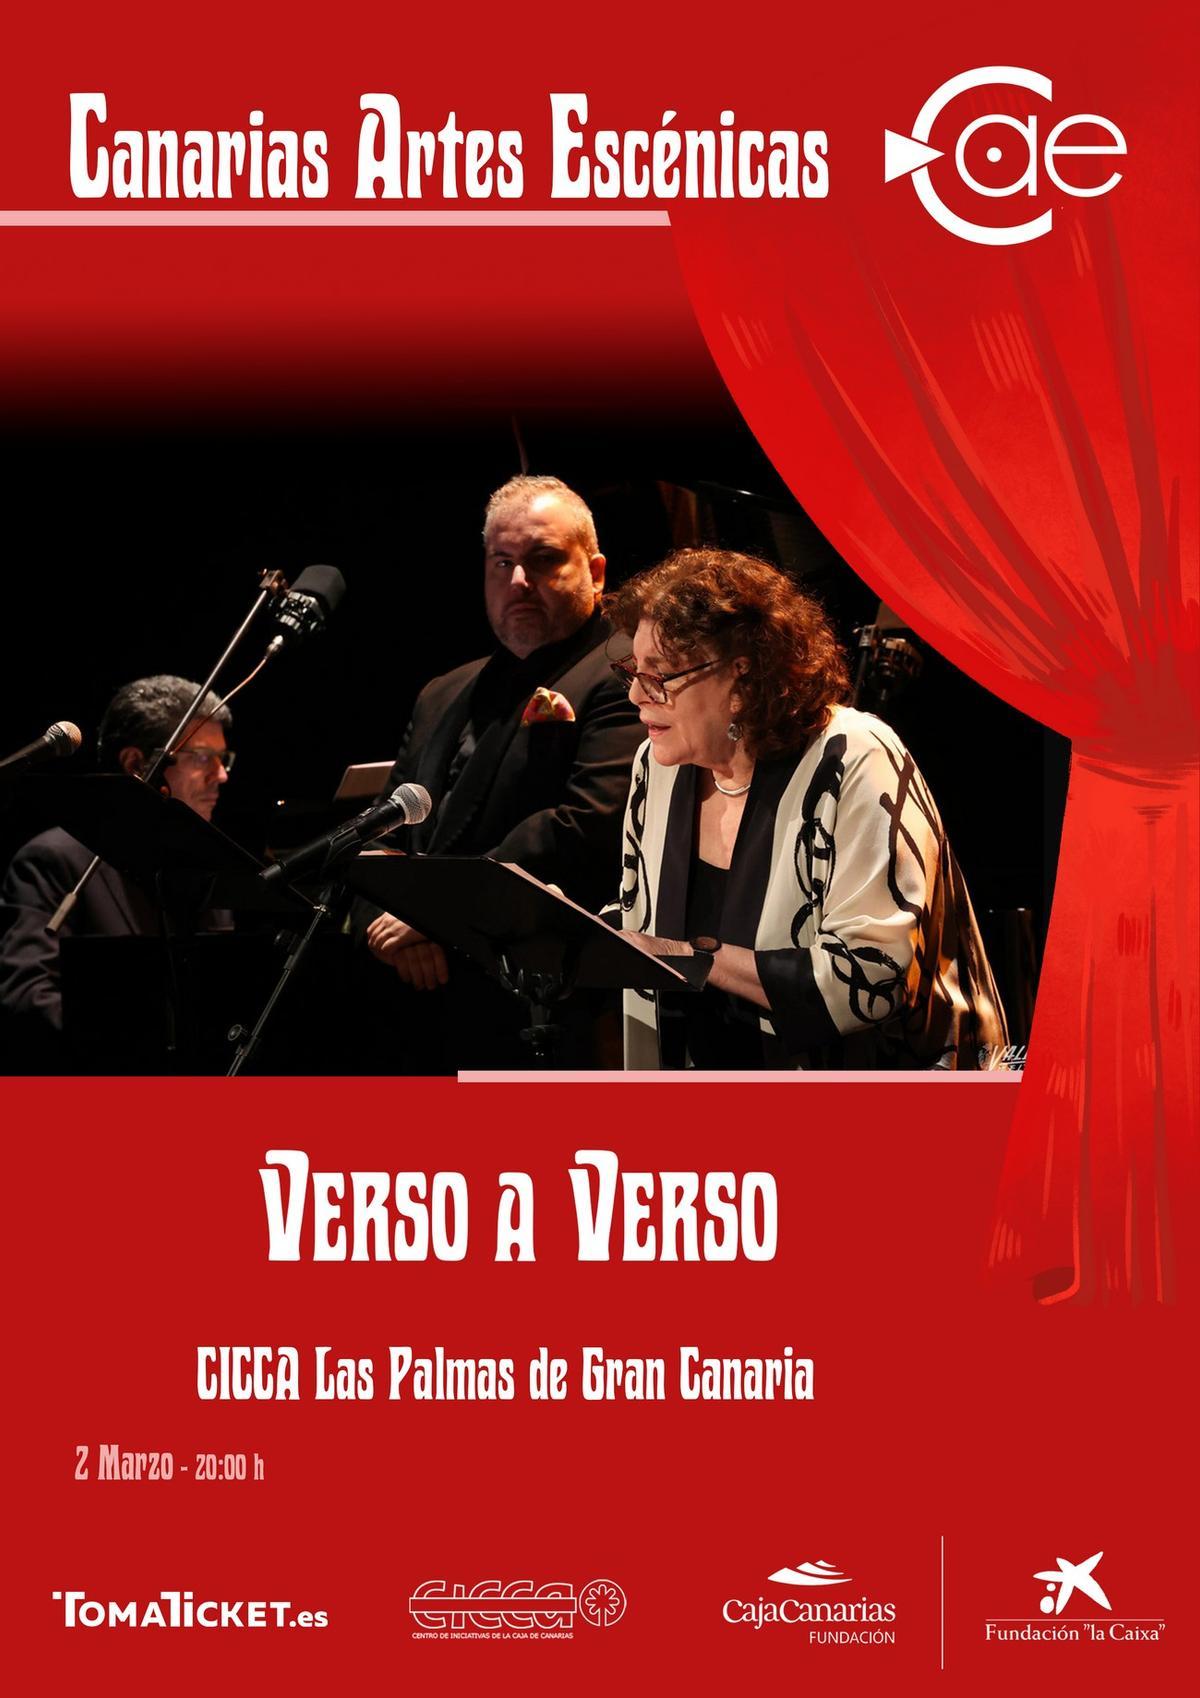 Charo López abre el Festival Internacional de Teatro 'Canarias Artes Escénicas' en el CICCA.